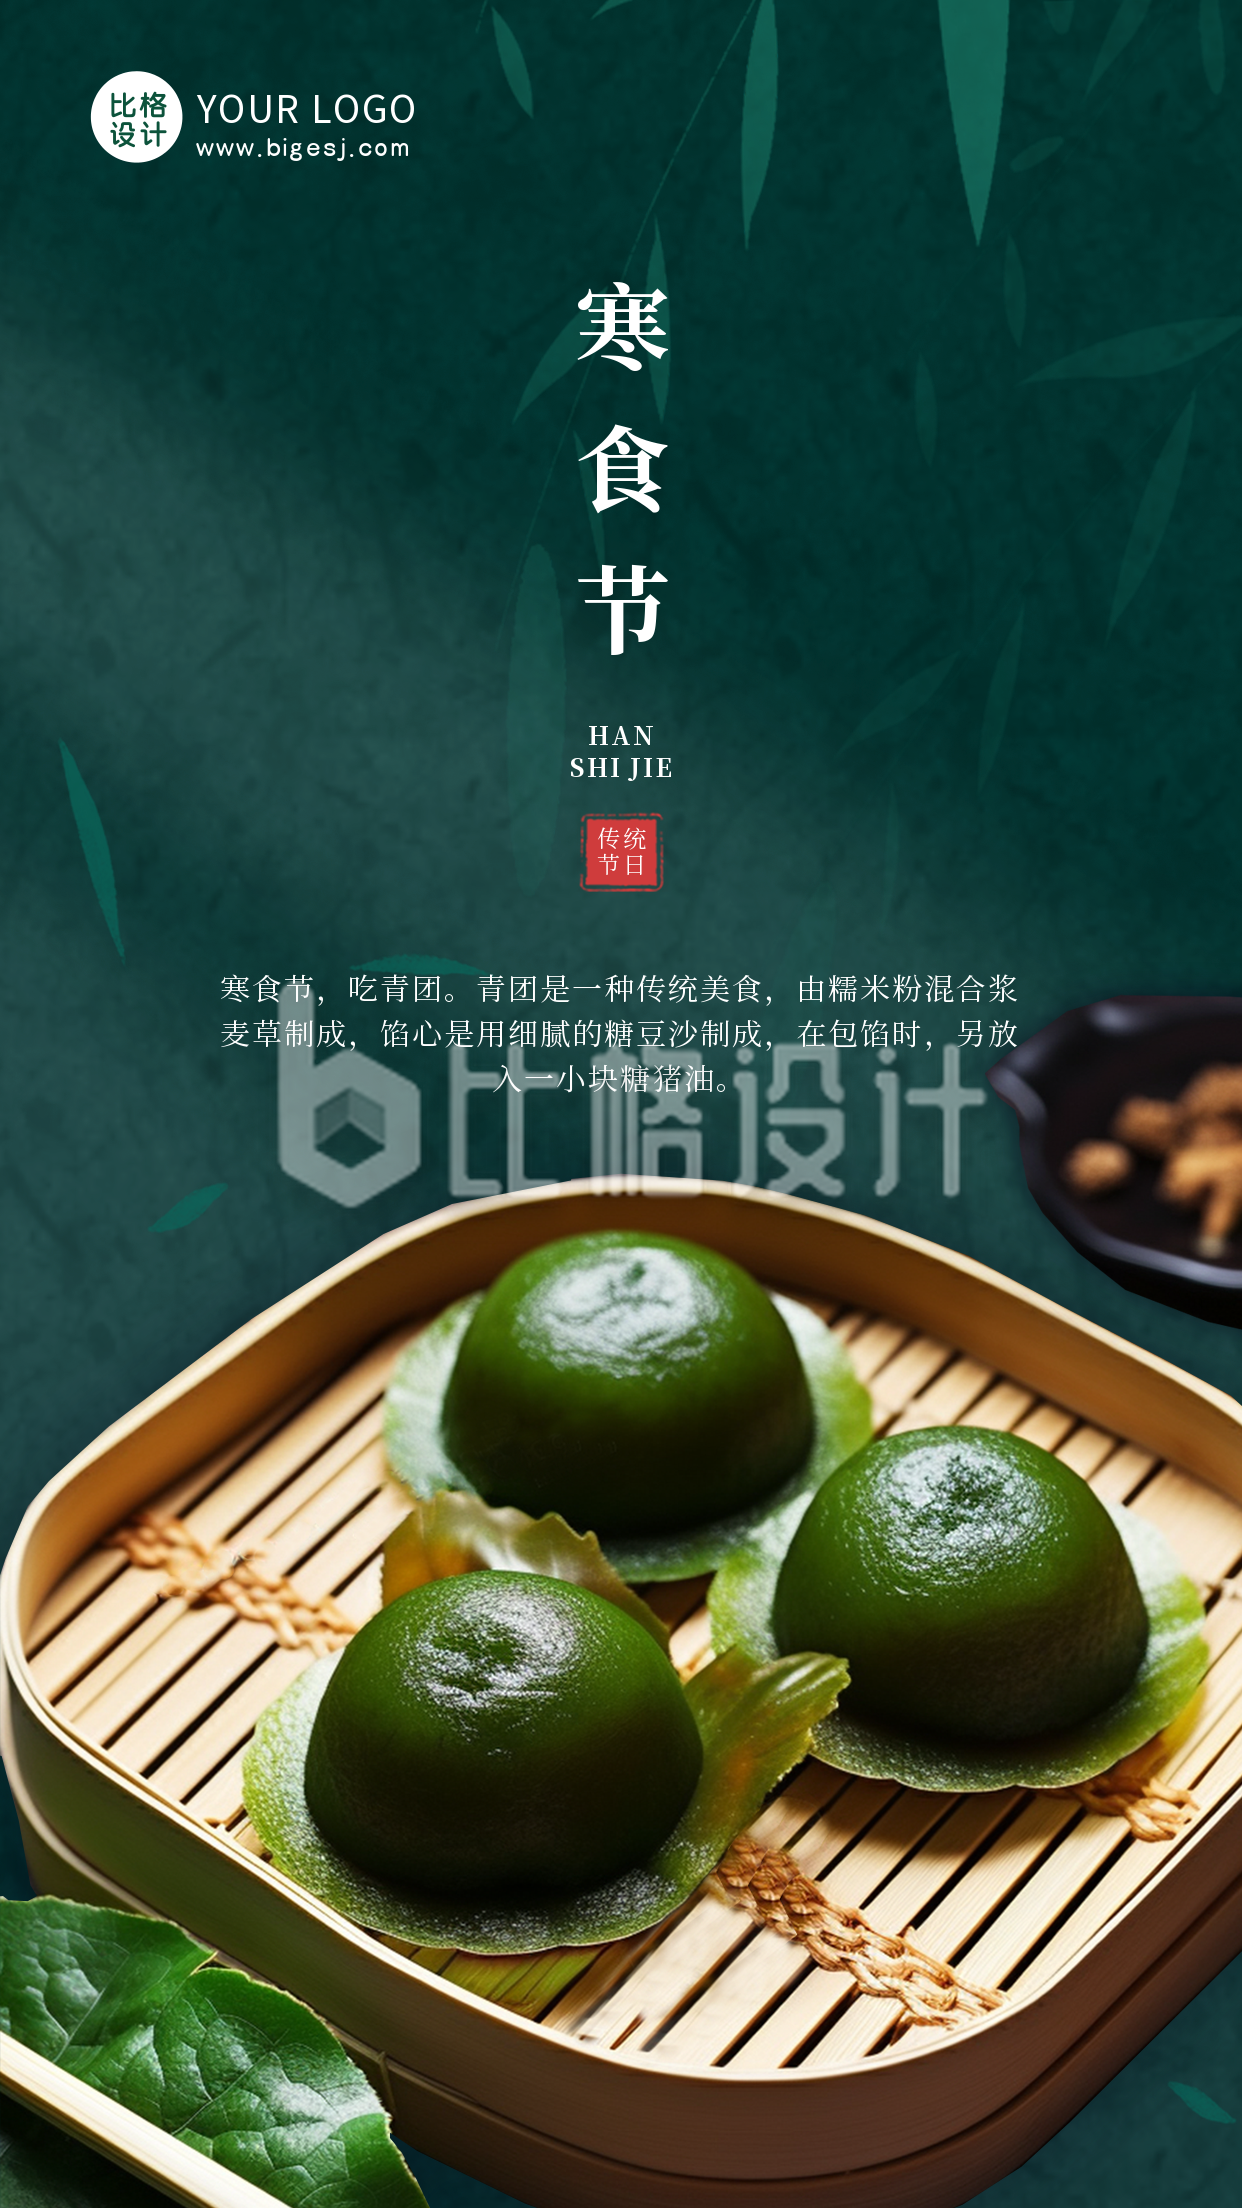 中国传统节日寒食节习俗手机海报